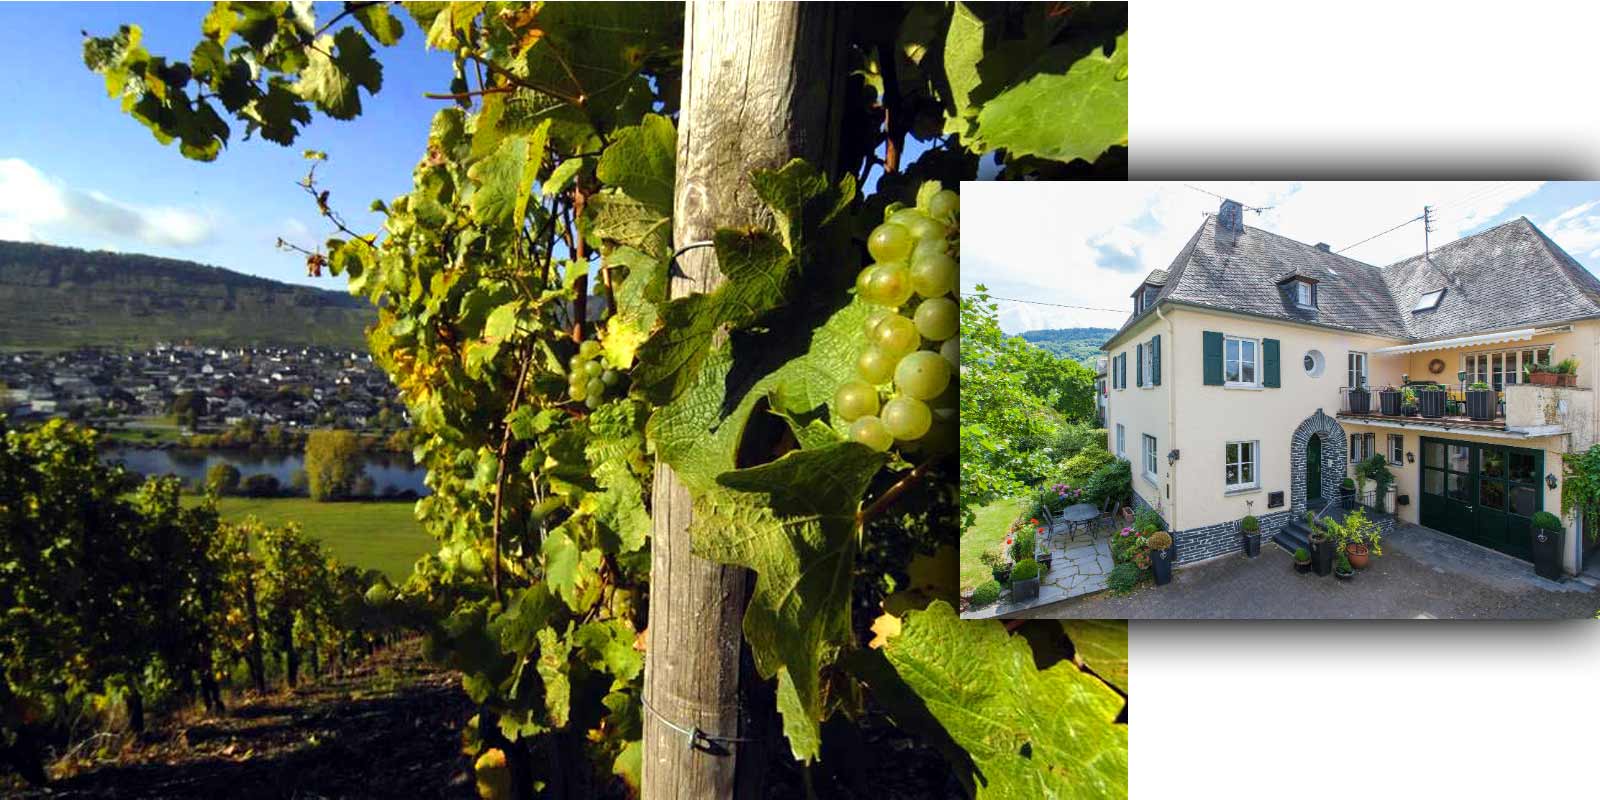 Celler Grans-Fassian - Regio vitivinicola del Mosella Gerhard Grans es va fer carrec del negoci vinicola del seu pare Matthias l`any 1982 i va ampliar la superficie de vinya de 4 hectarees a 9,5 hectarees actuals, de les quals el 88% esta plantada amb Riesling, un 10% Pinot Blanc i un 2% Pinot Gris. Les millors ubicacions del celler tambe son ubicacions classificades: es classifiquen en la categoria de cultiu mes alta.